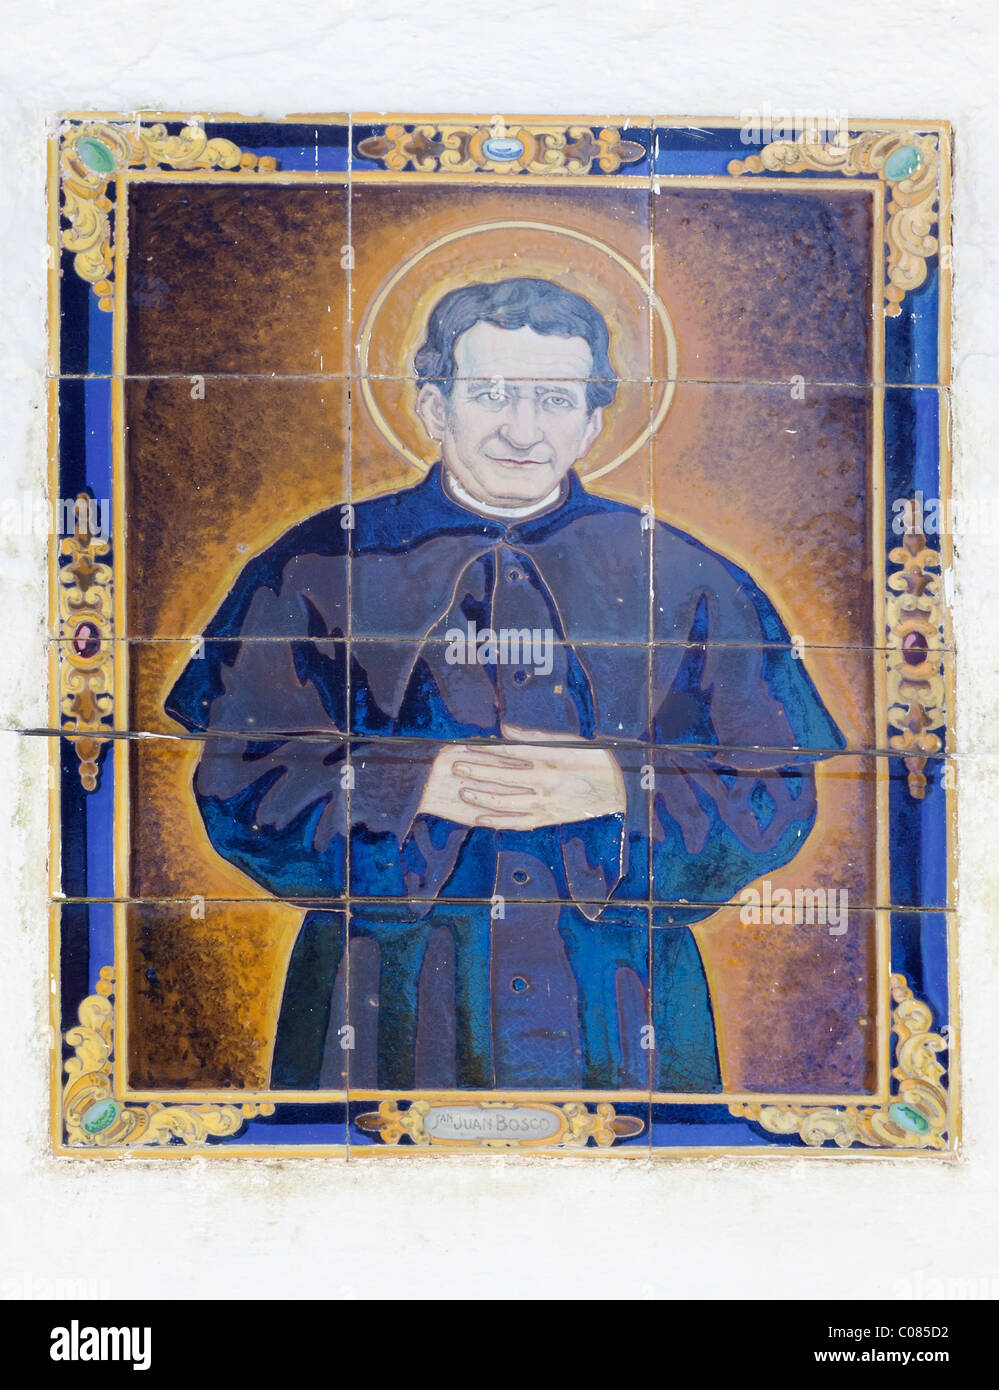 Azulejos de Cerámica de San Giovanni Melchiorre Bosco,1815 - 1888. El sacerdote católico italiano, educador y escritor. Foto de stock